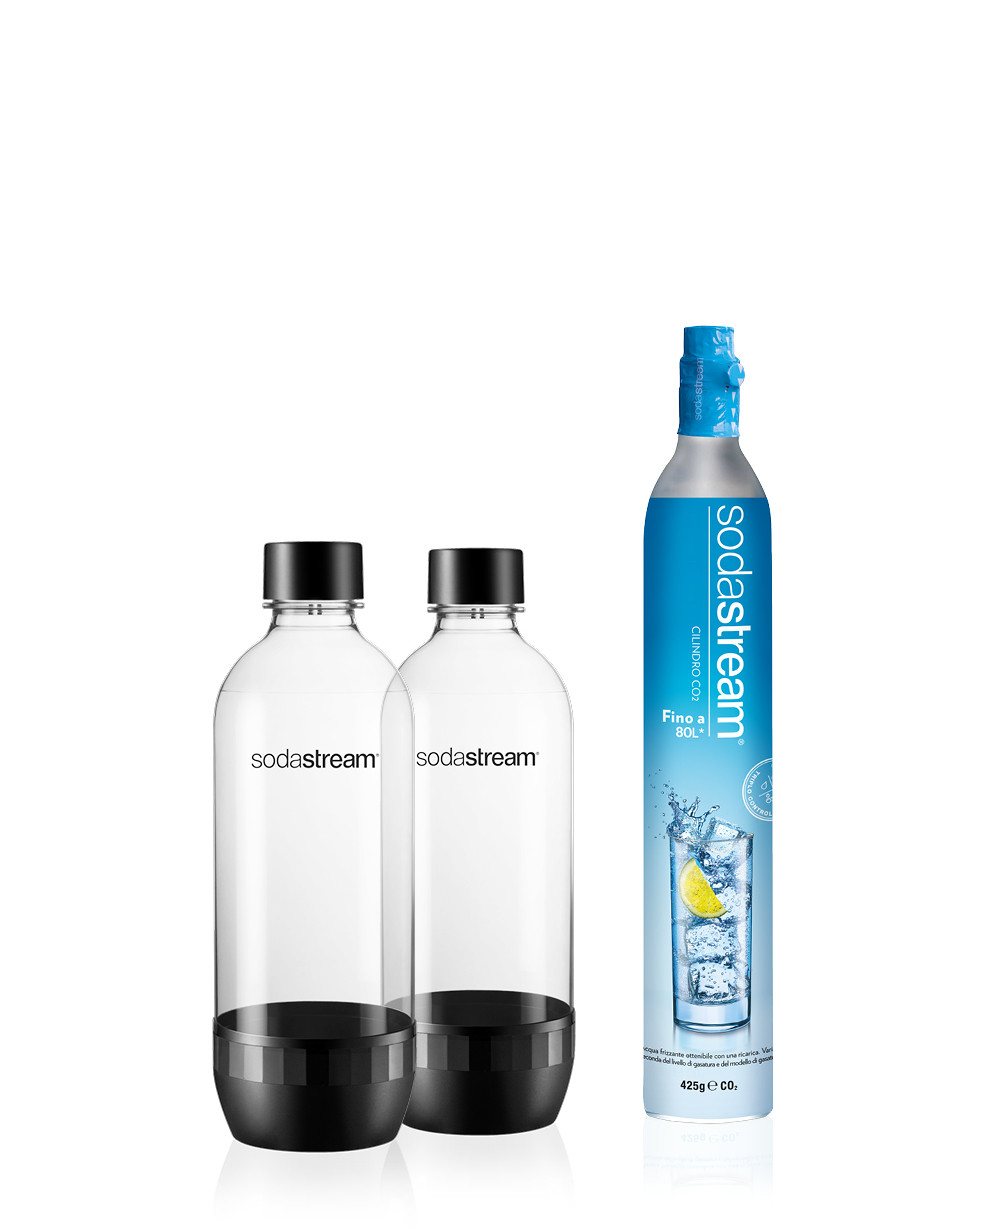 confezione doppia colore: Bianco adatte a sorgente/Genesis Deluxe Makers Bottiglie di carbonazione da 1 l Sodastream